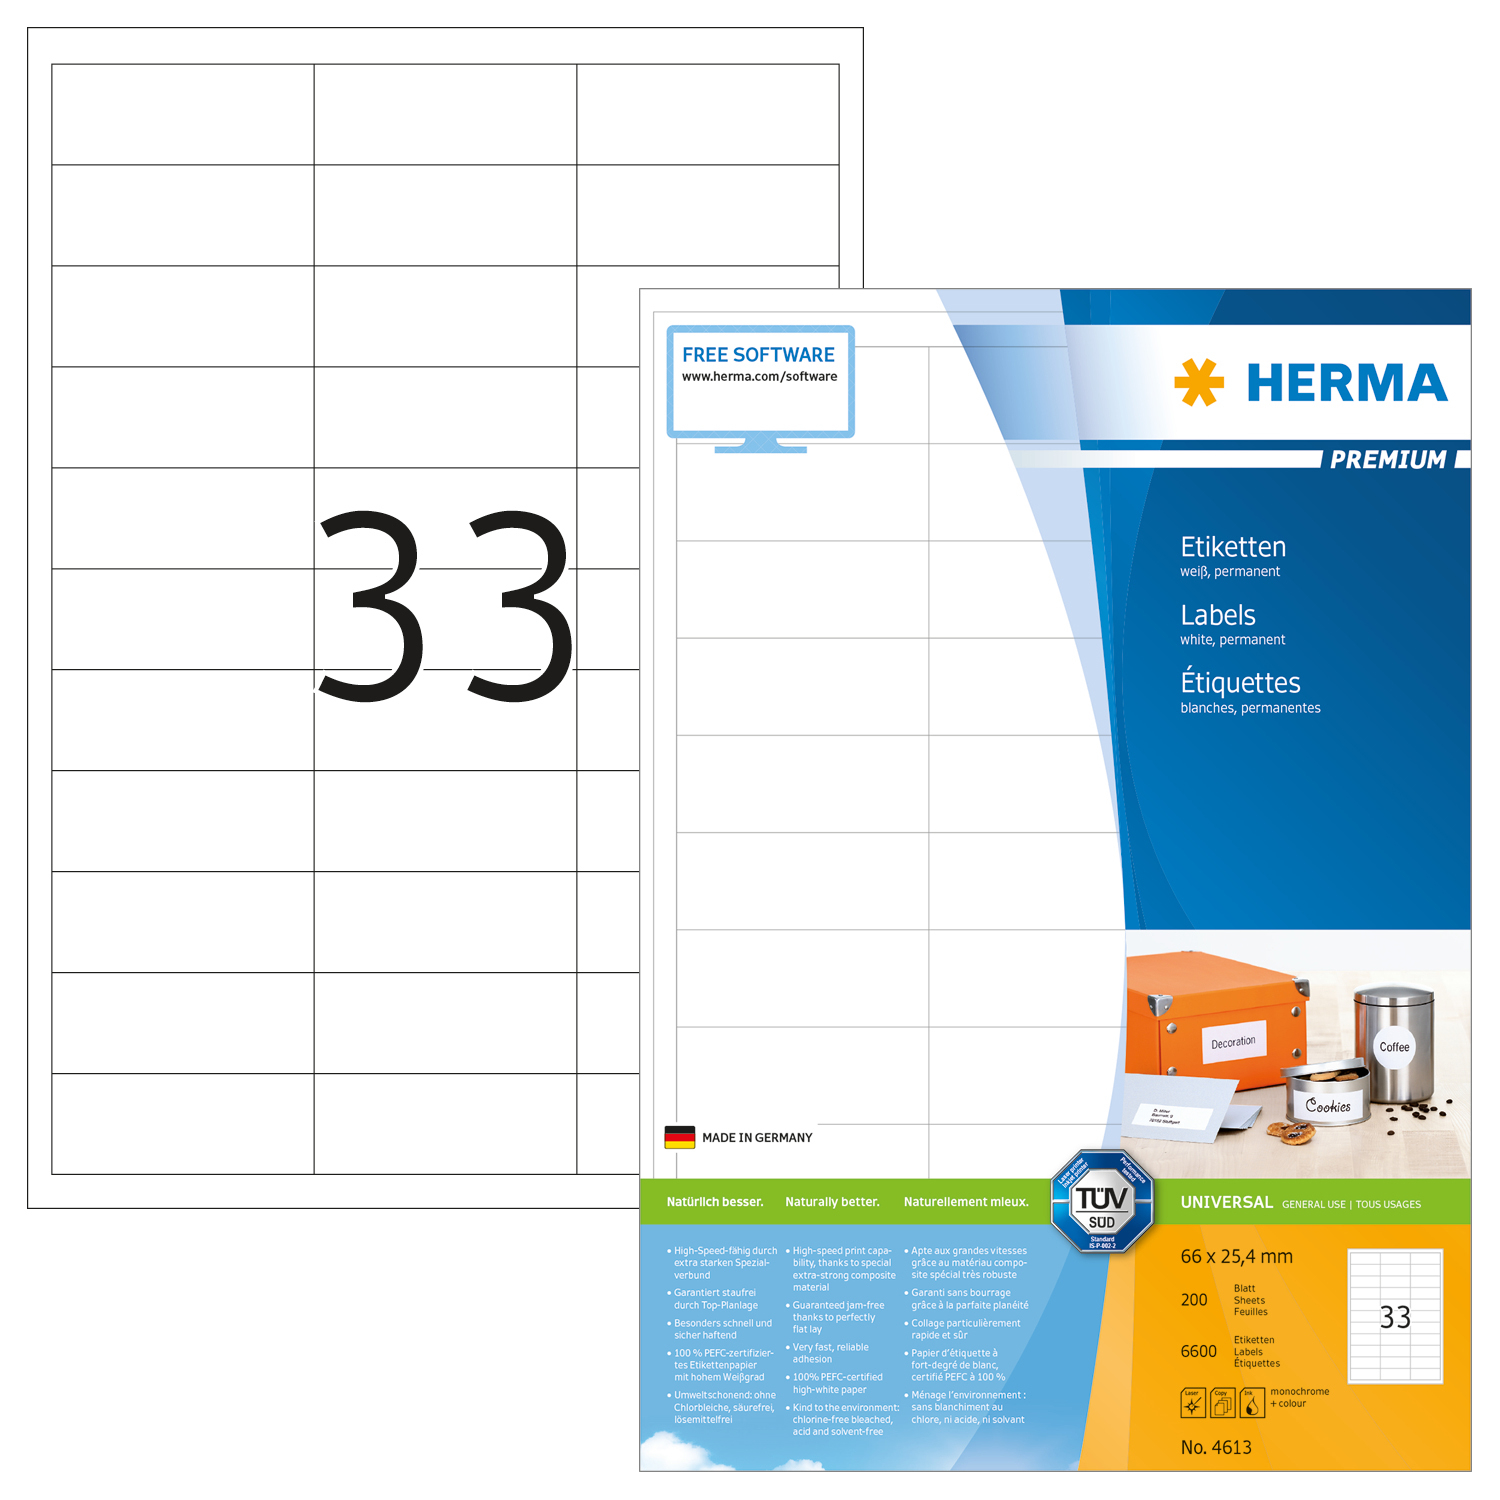 HERMA Etiquettes Premium 66×25,4mm 4613 blanc 6600 pcs.